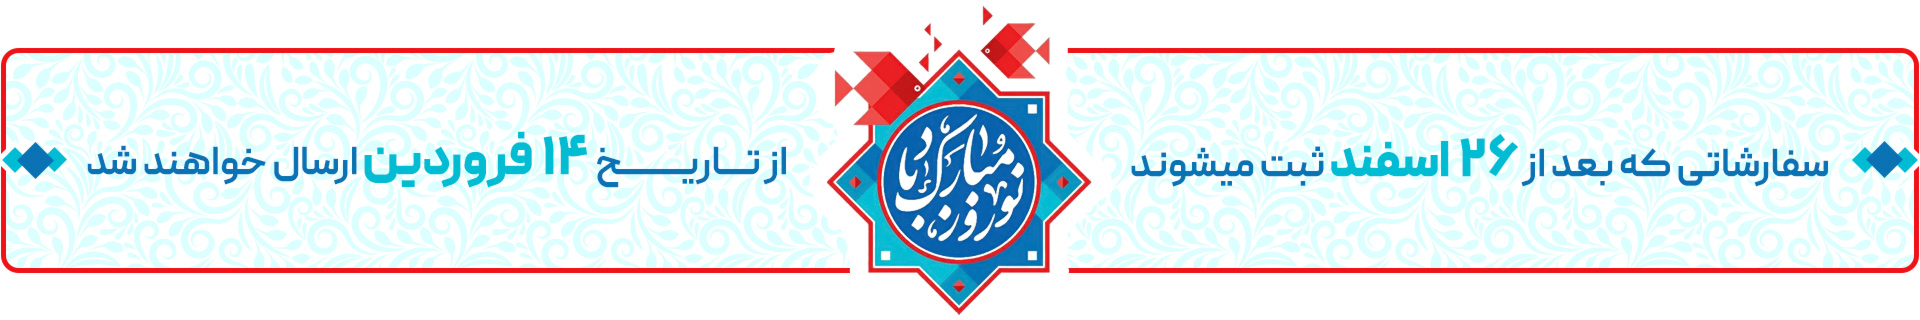 عید 1403 مبارک - فروشگاه اینترنتی فندک مارکت